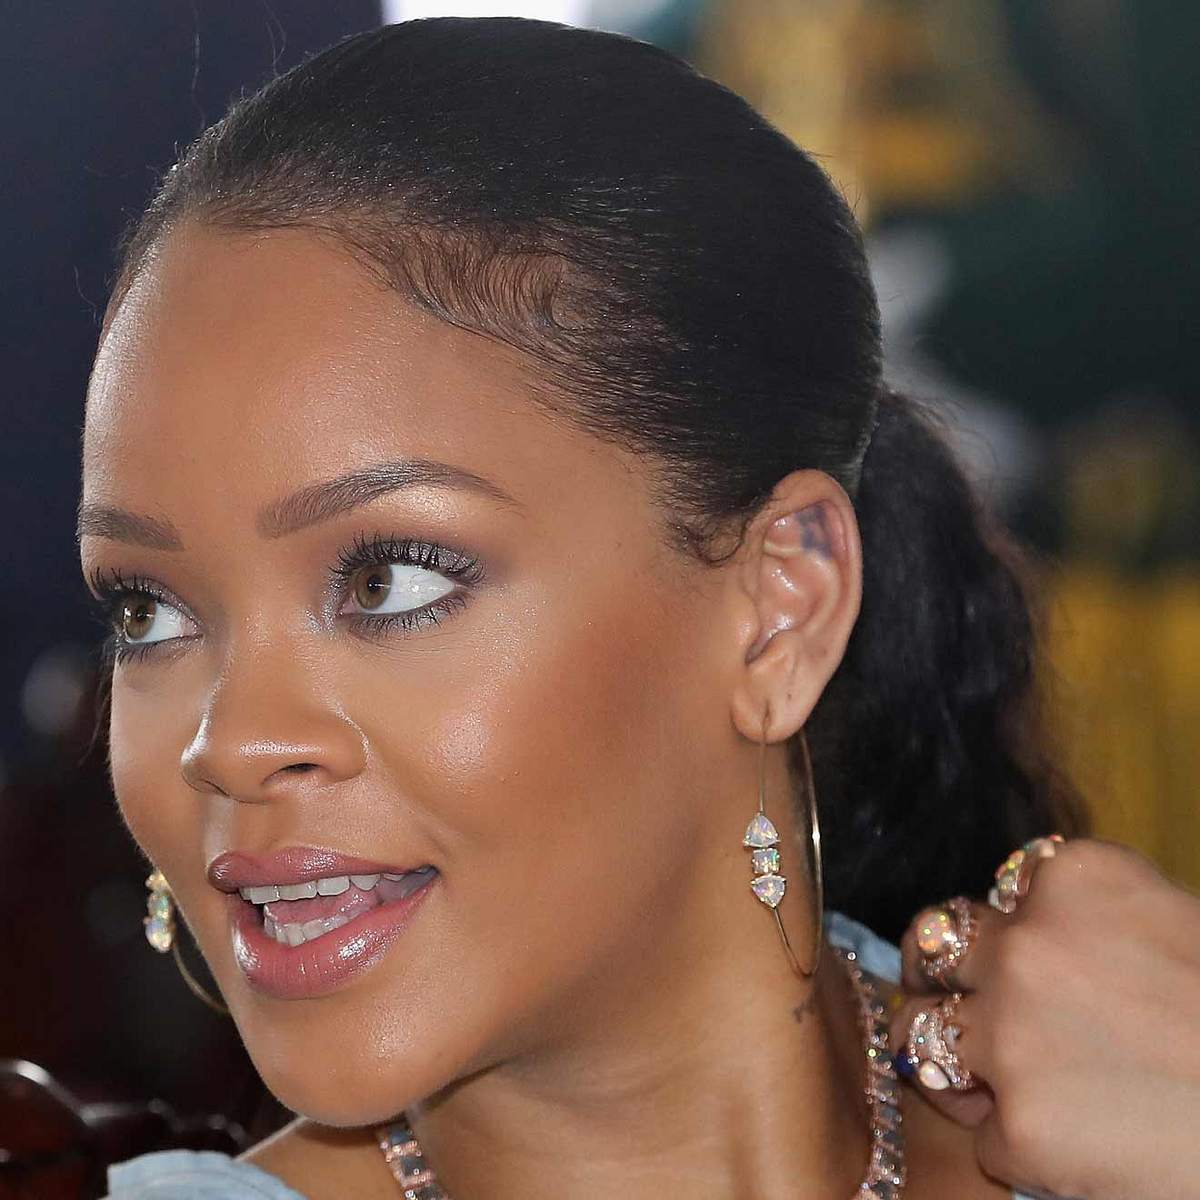 Die verrücktesten Tattoos der Stars Rihanna